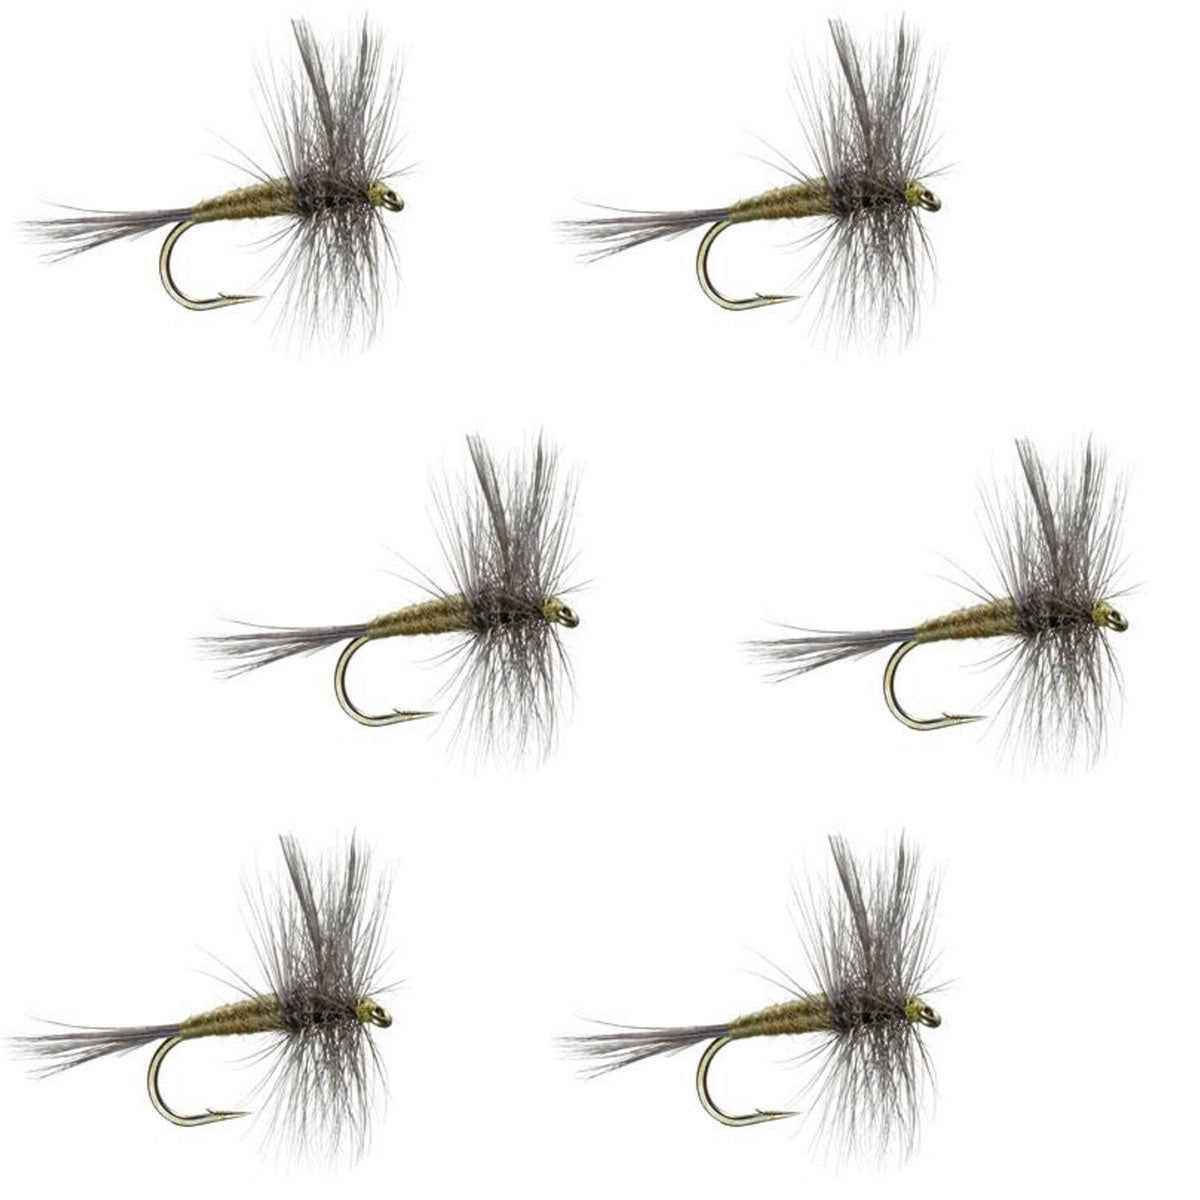 Moscas de pesca con mosca seca para trucha clásica BWO de oliva con alas azules, juego de 6 moscas, tamaño 14 